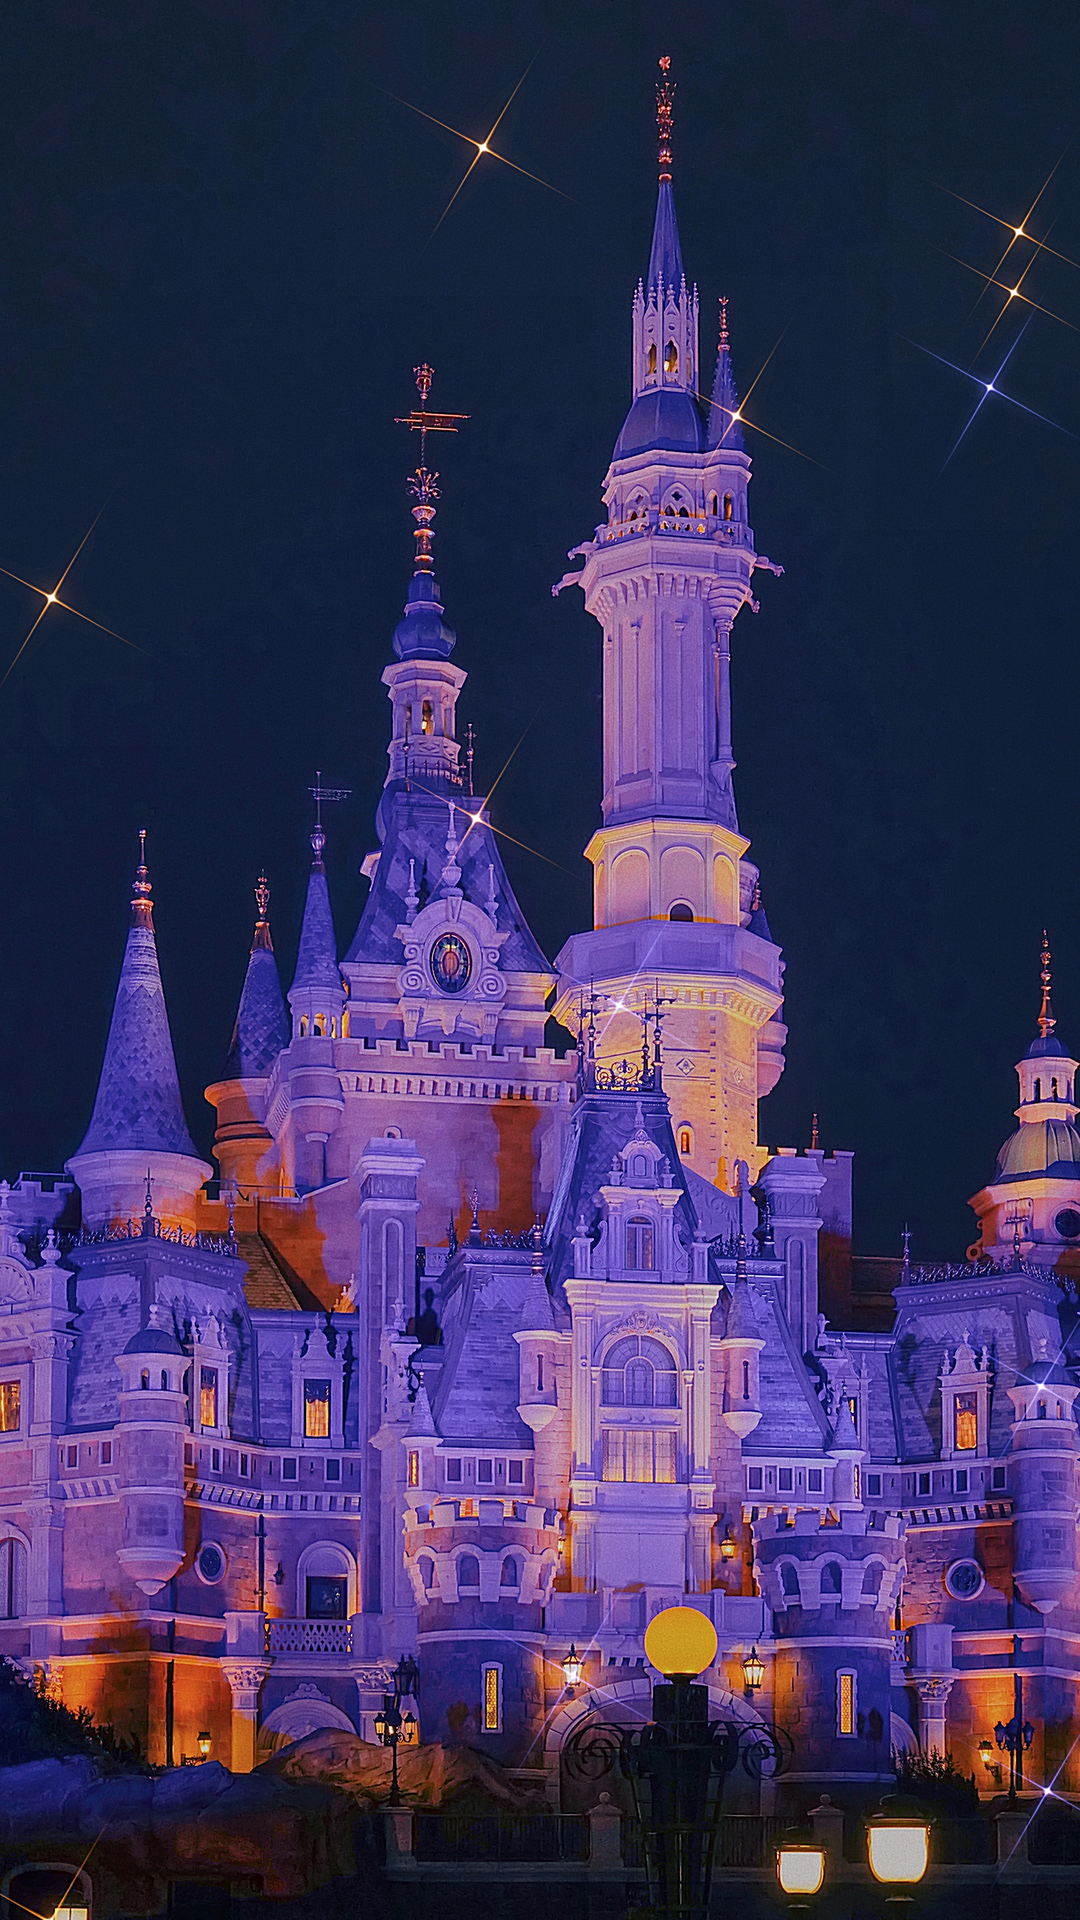 迪士尼城堡的浪漫夜景